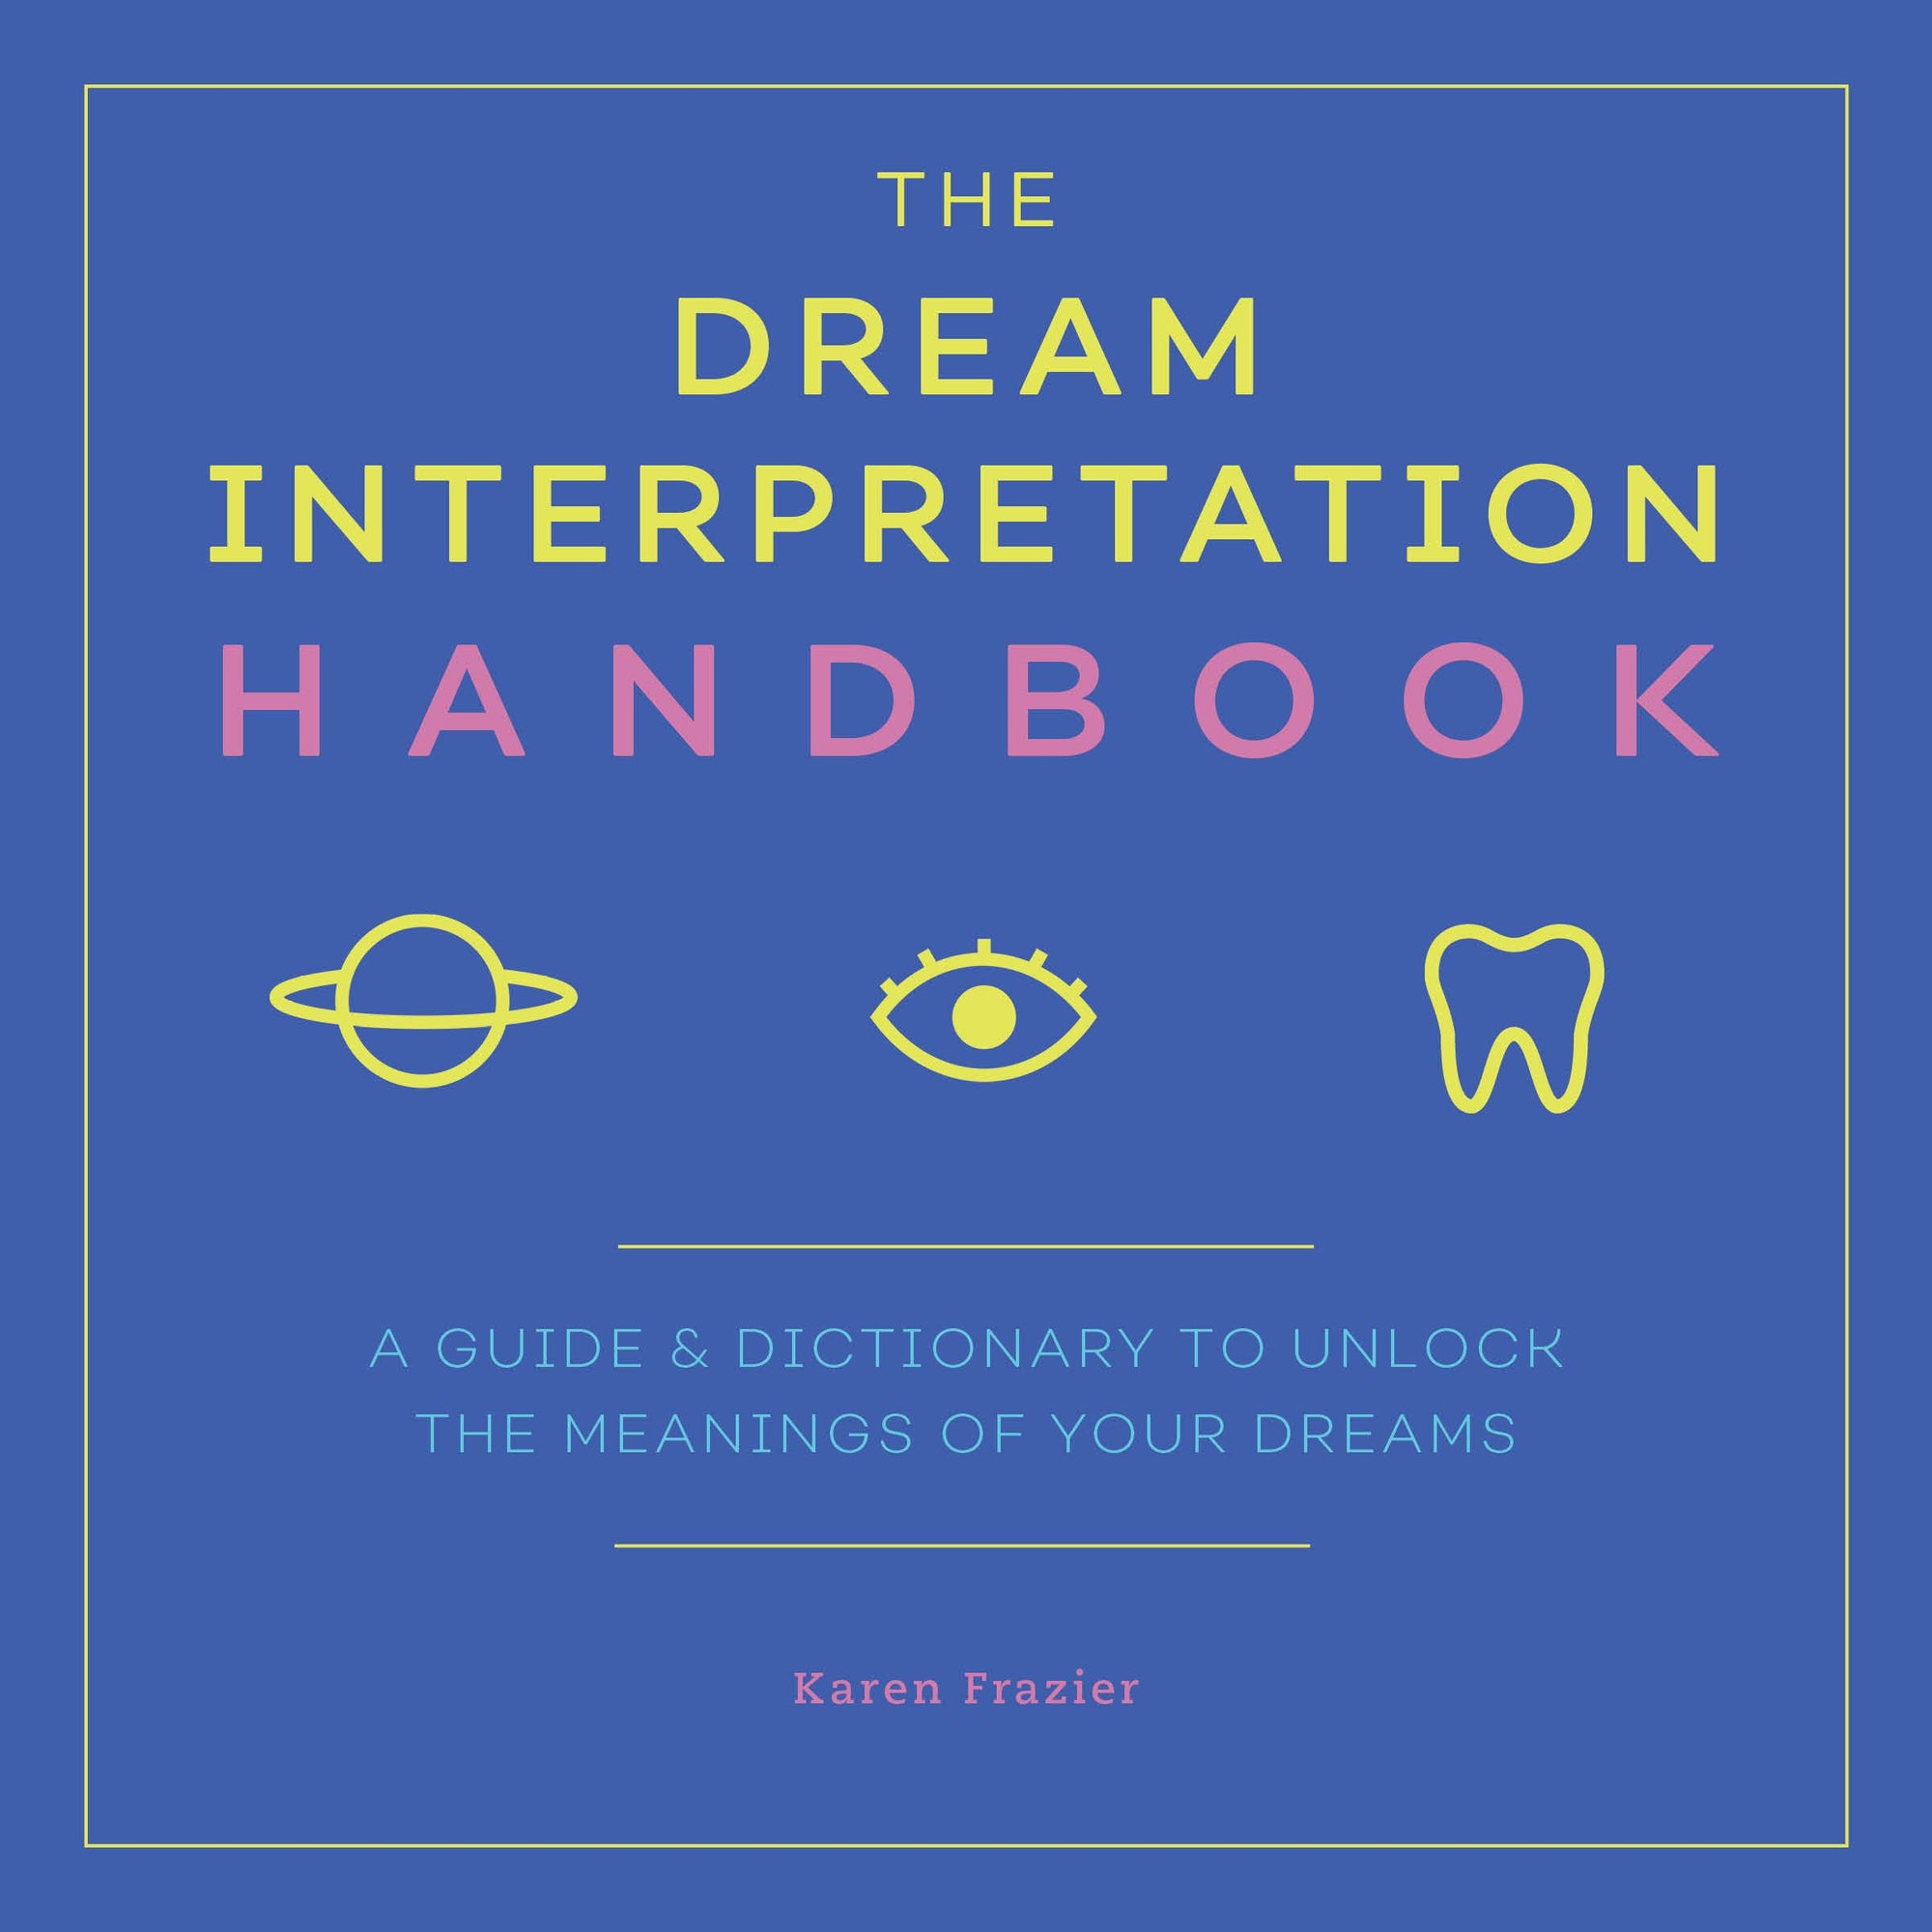 The Dream Interpretation Handbook: by Karen Frazier